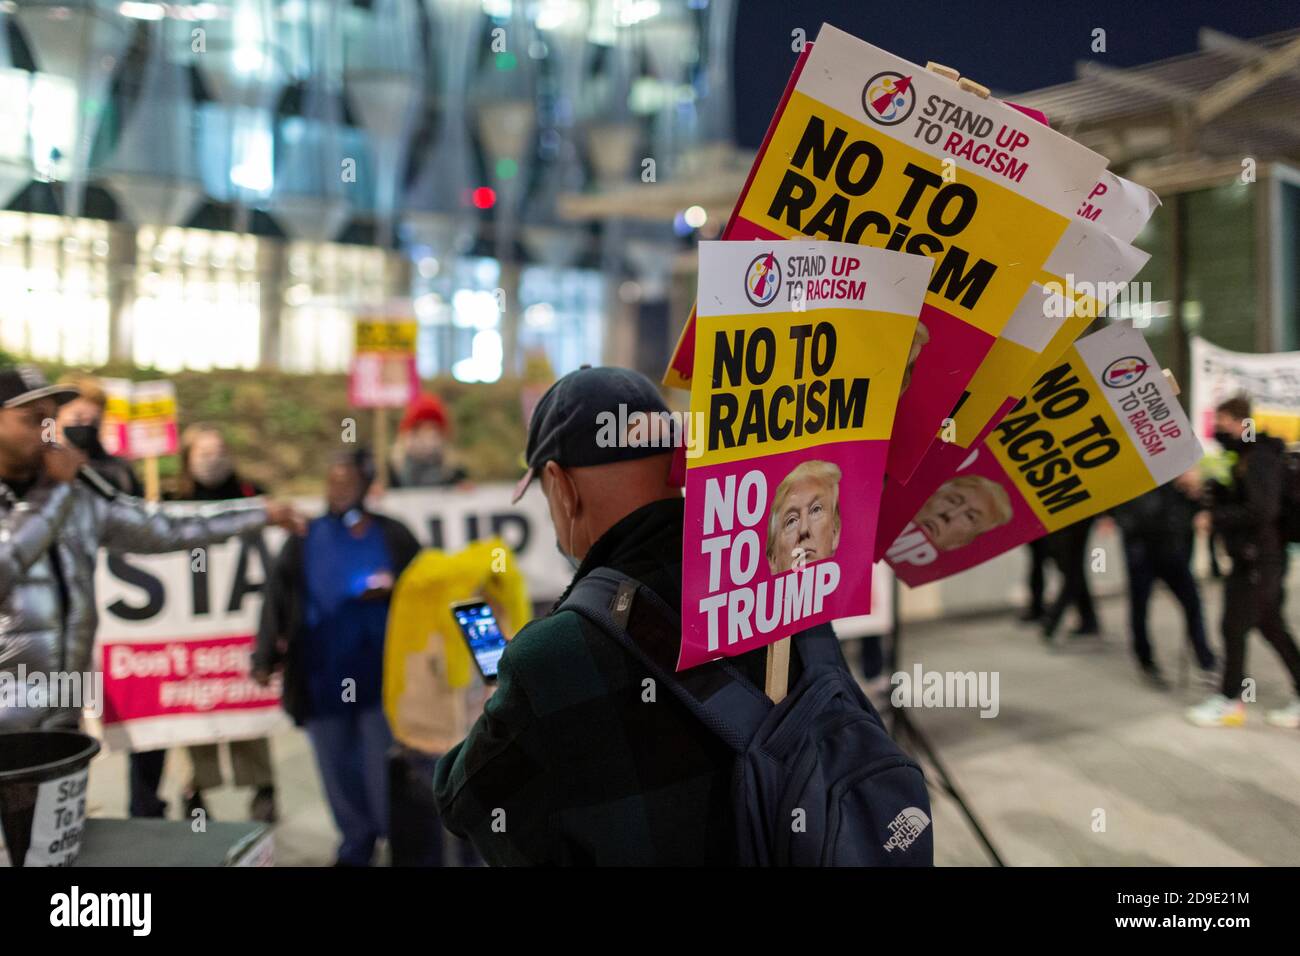 Manifestant tenant des pancartes lors d'une manifestation contre Trump, ambassade des États-Unis, Londres, 4 novembre 2020 Banque D'Images